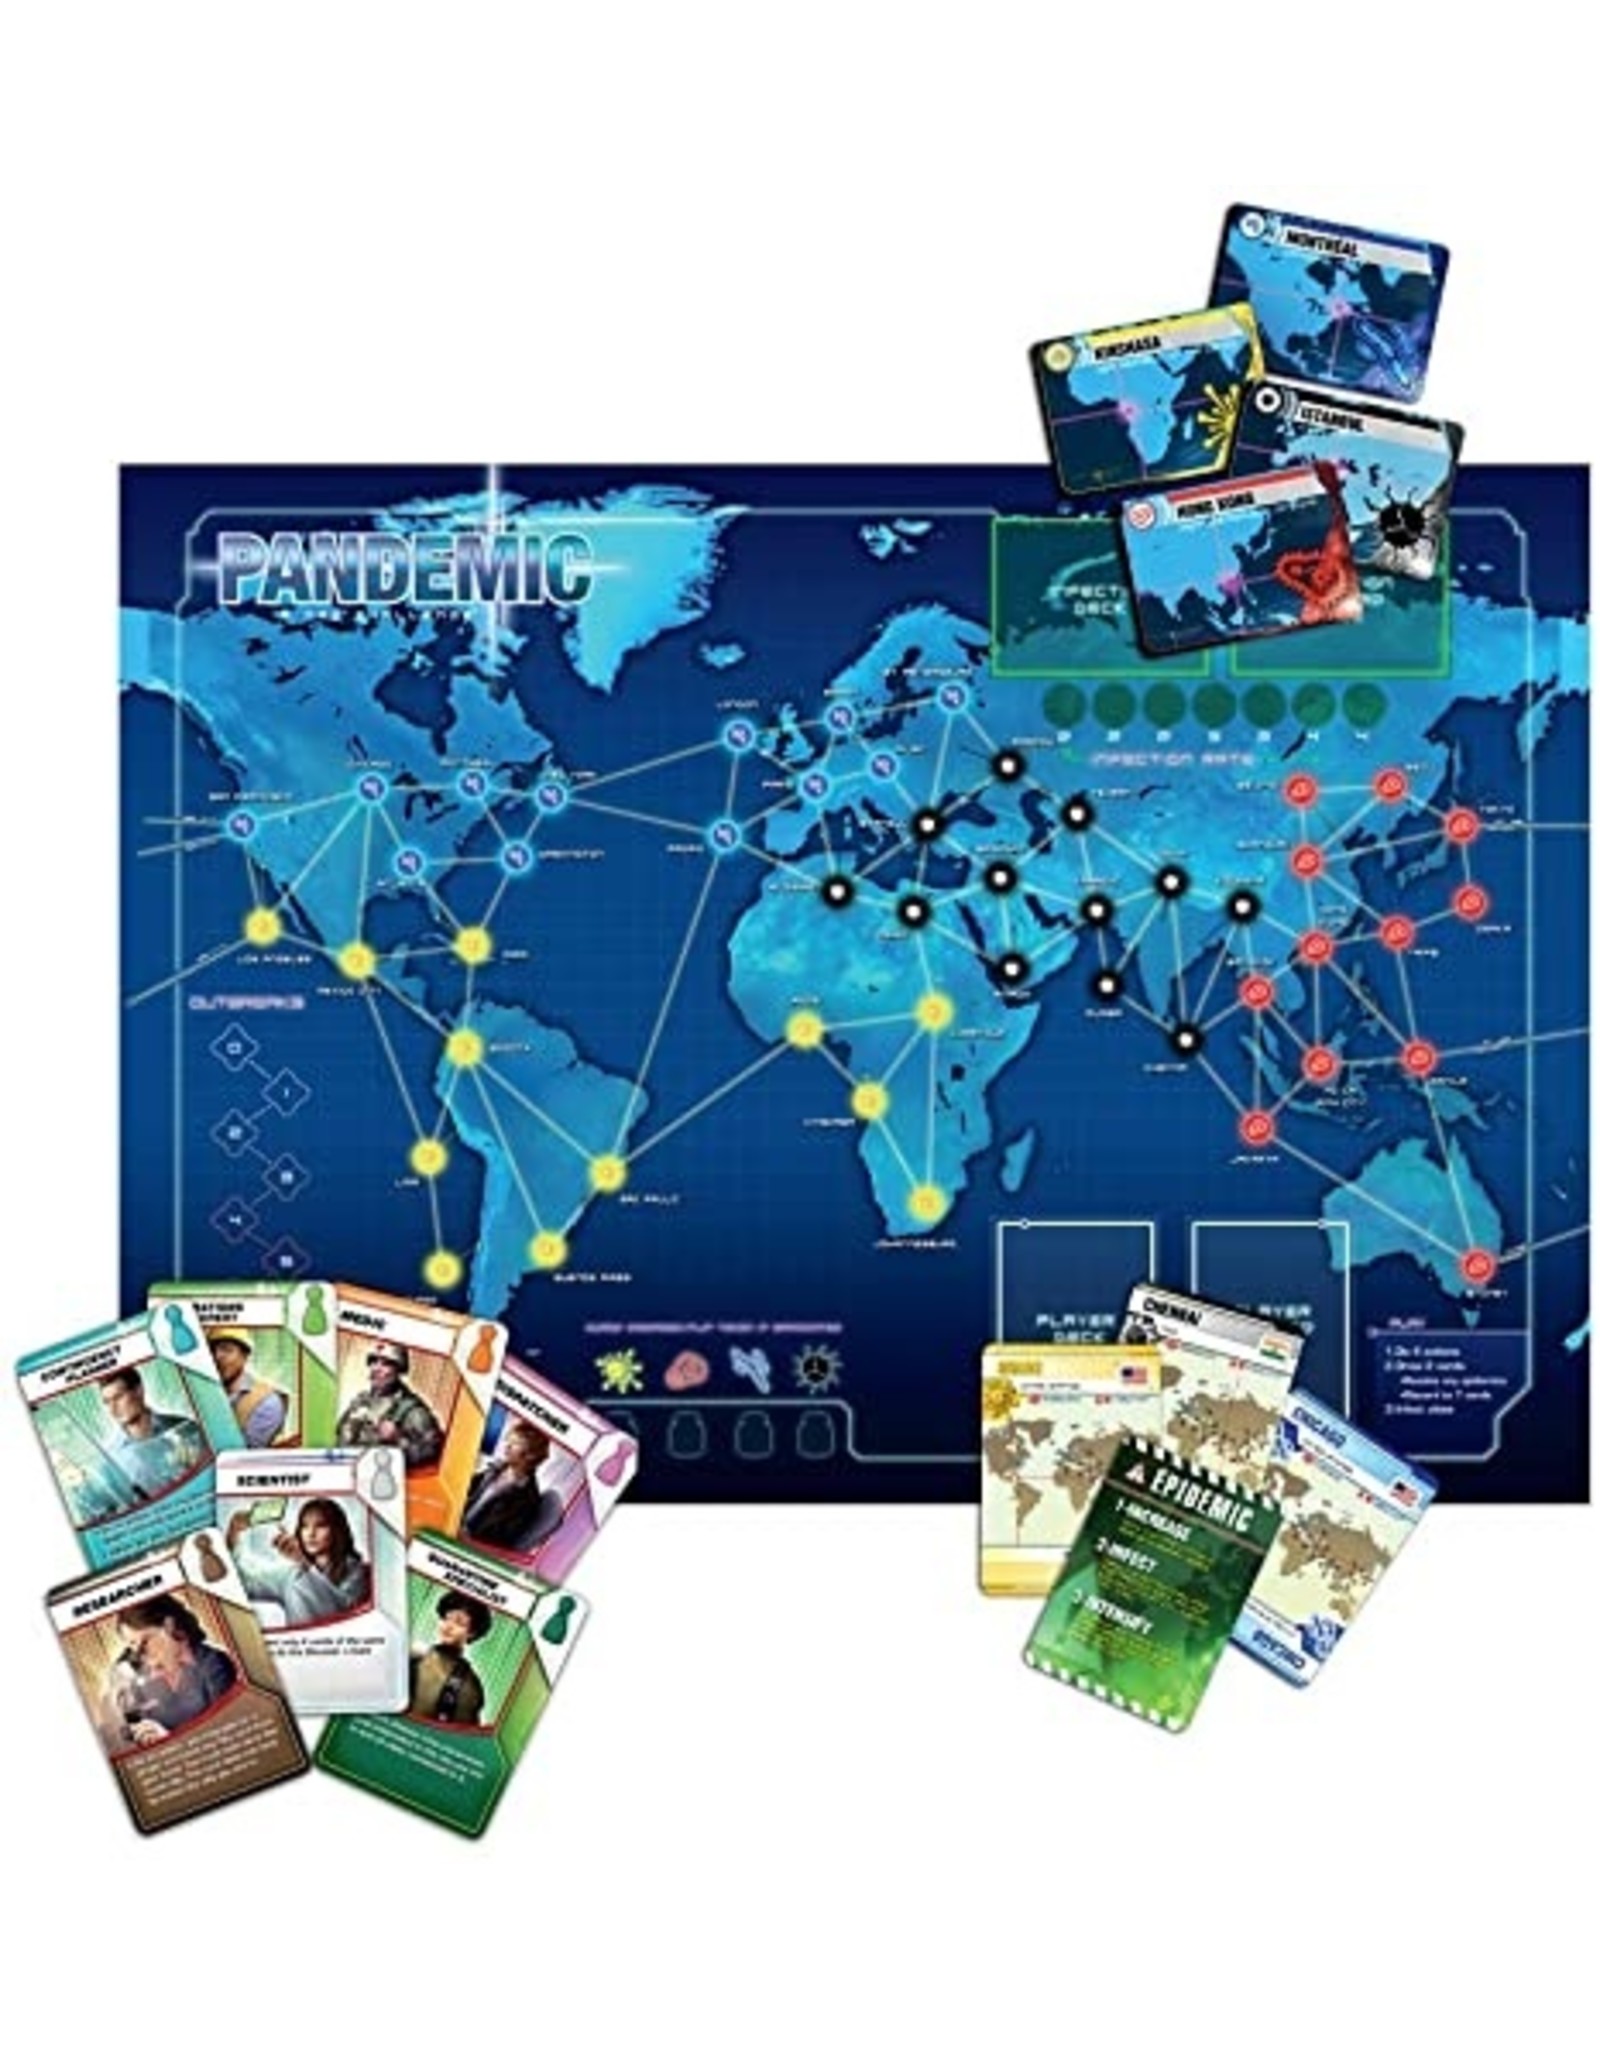 Z Man Games Pandemic Game